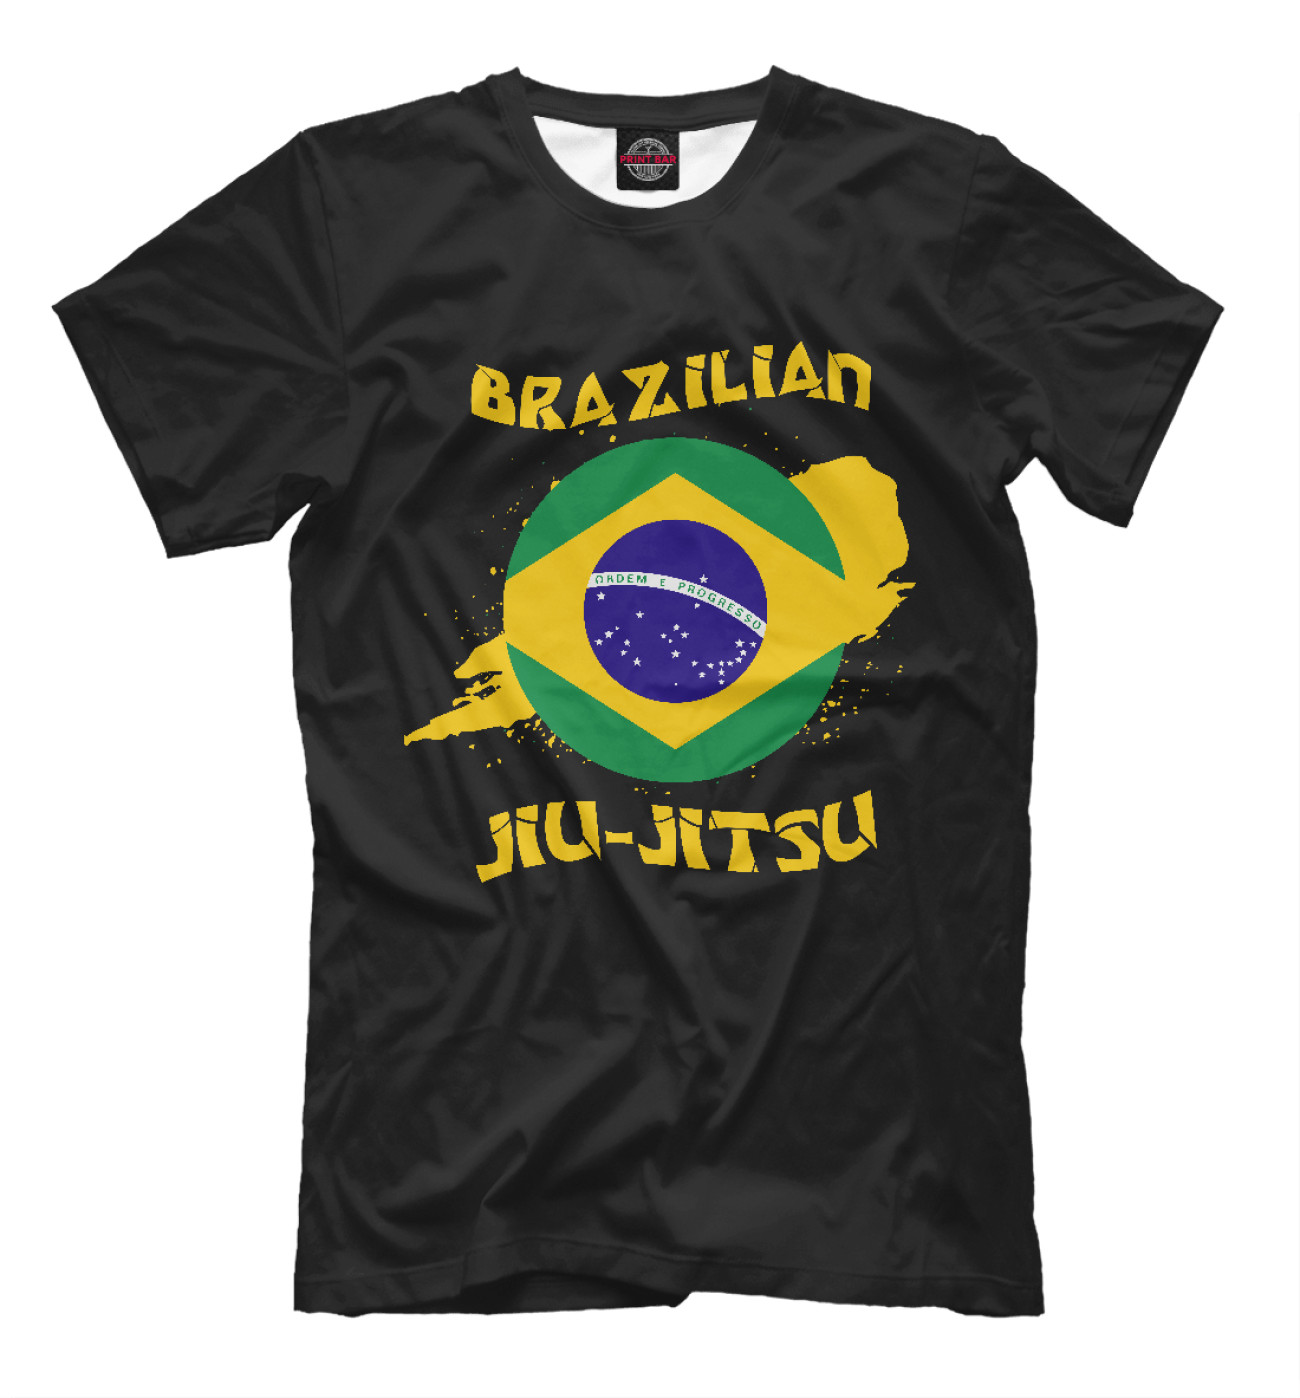 Мужская Футболка Бразильское джиу-джитсу, артикул: EDI-680613-fut-2